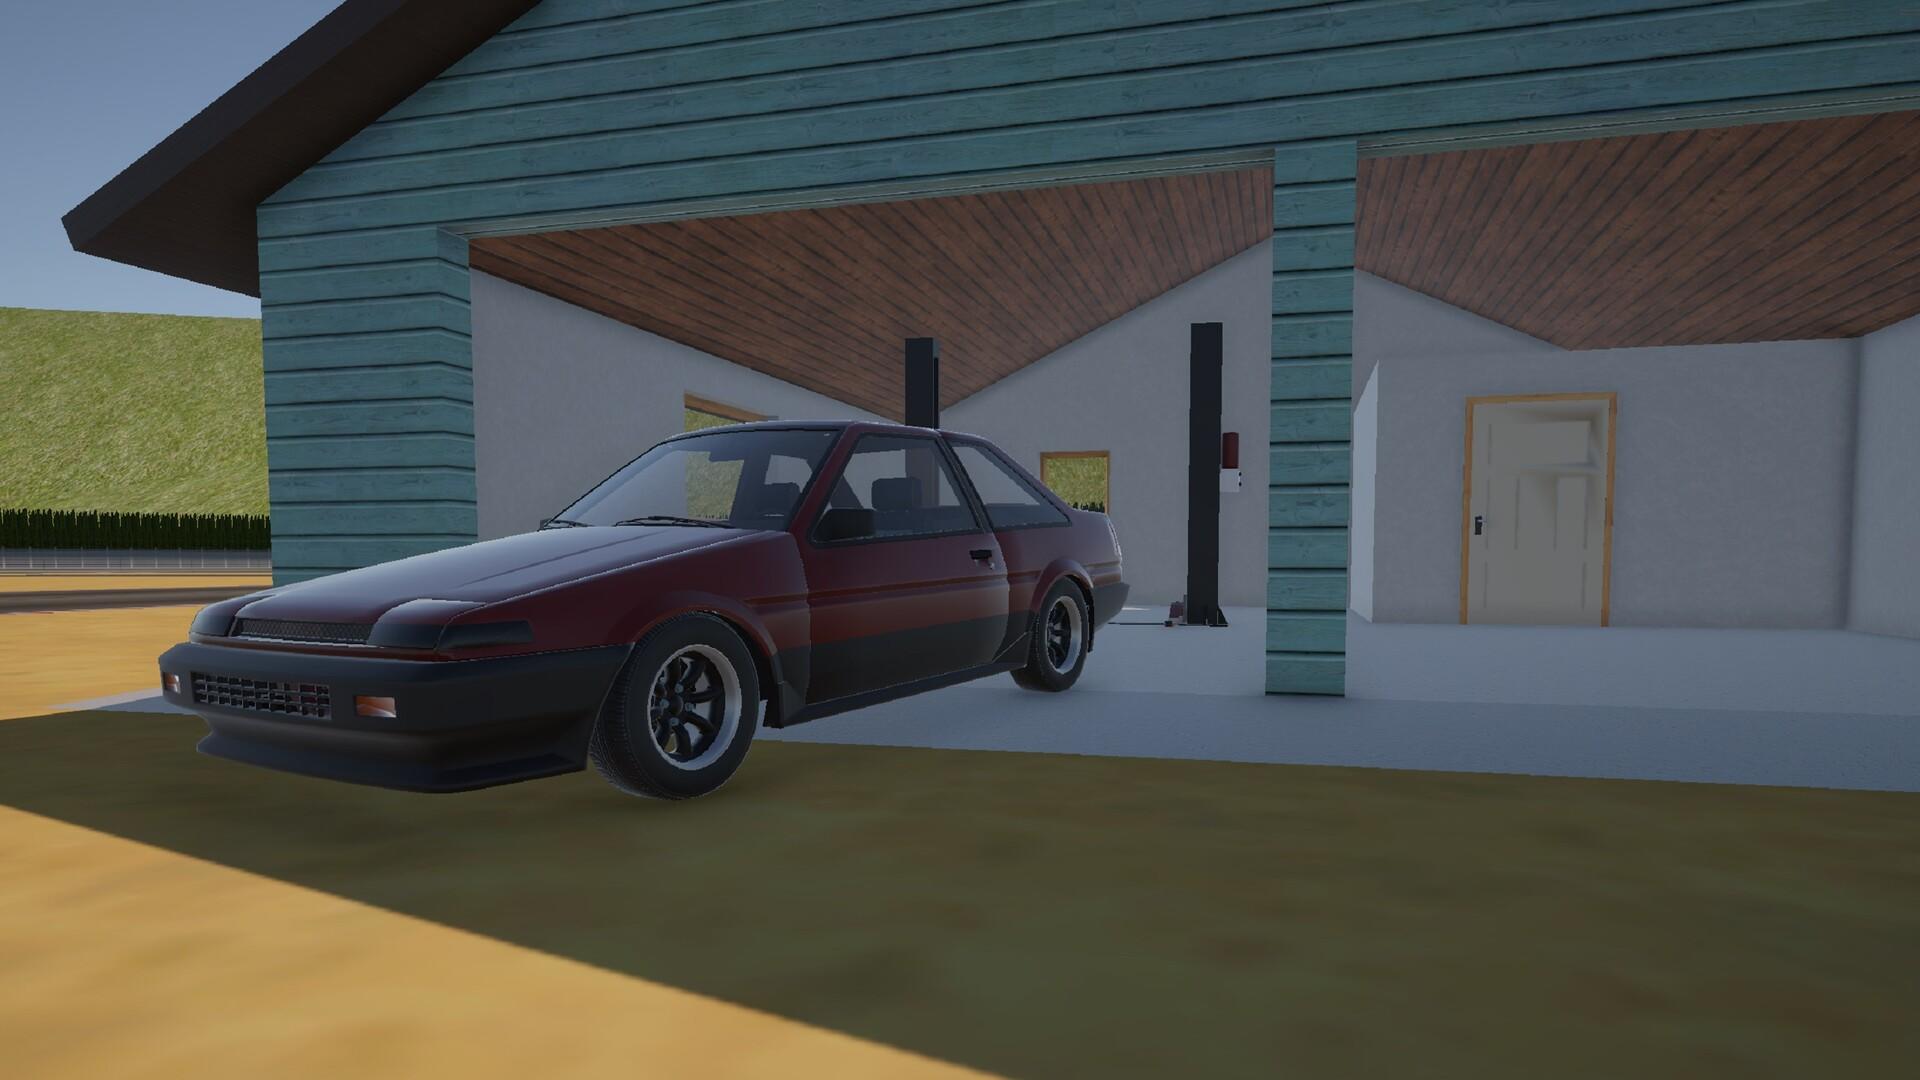 Garage Works screenshot game